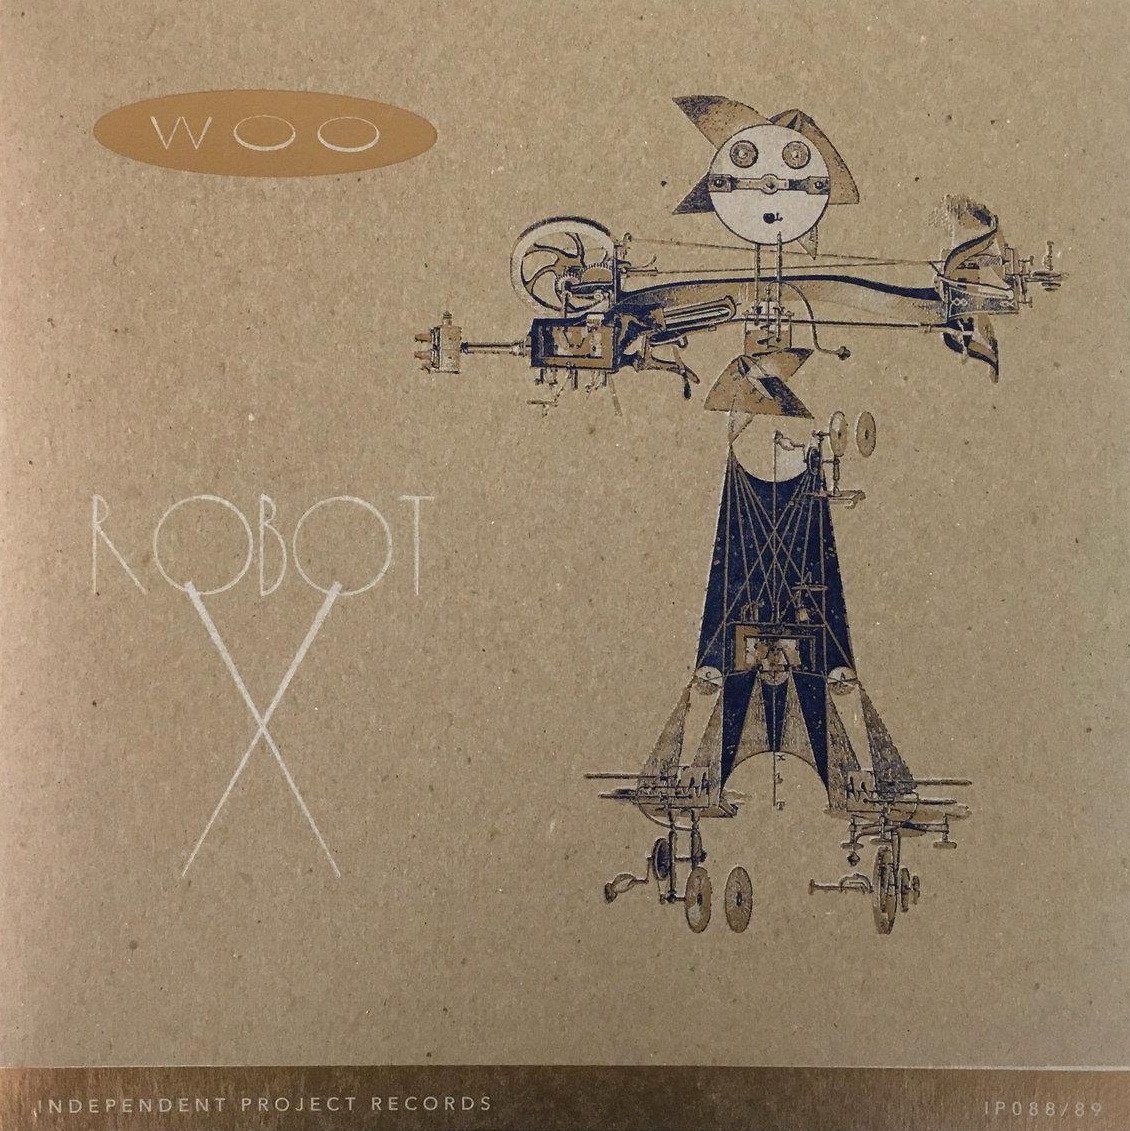 CD Shop - WOO XYLOPHONICS + ROBOT X